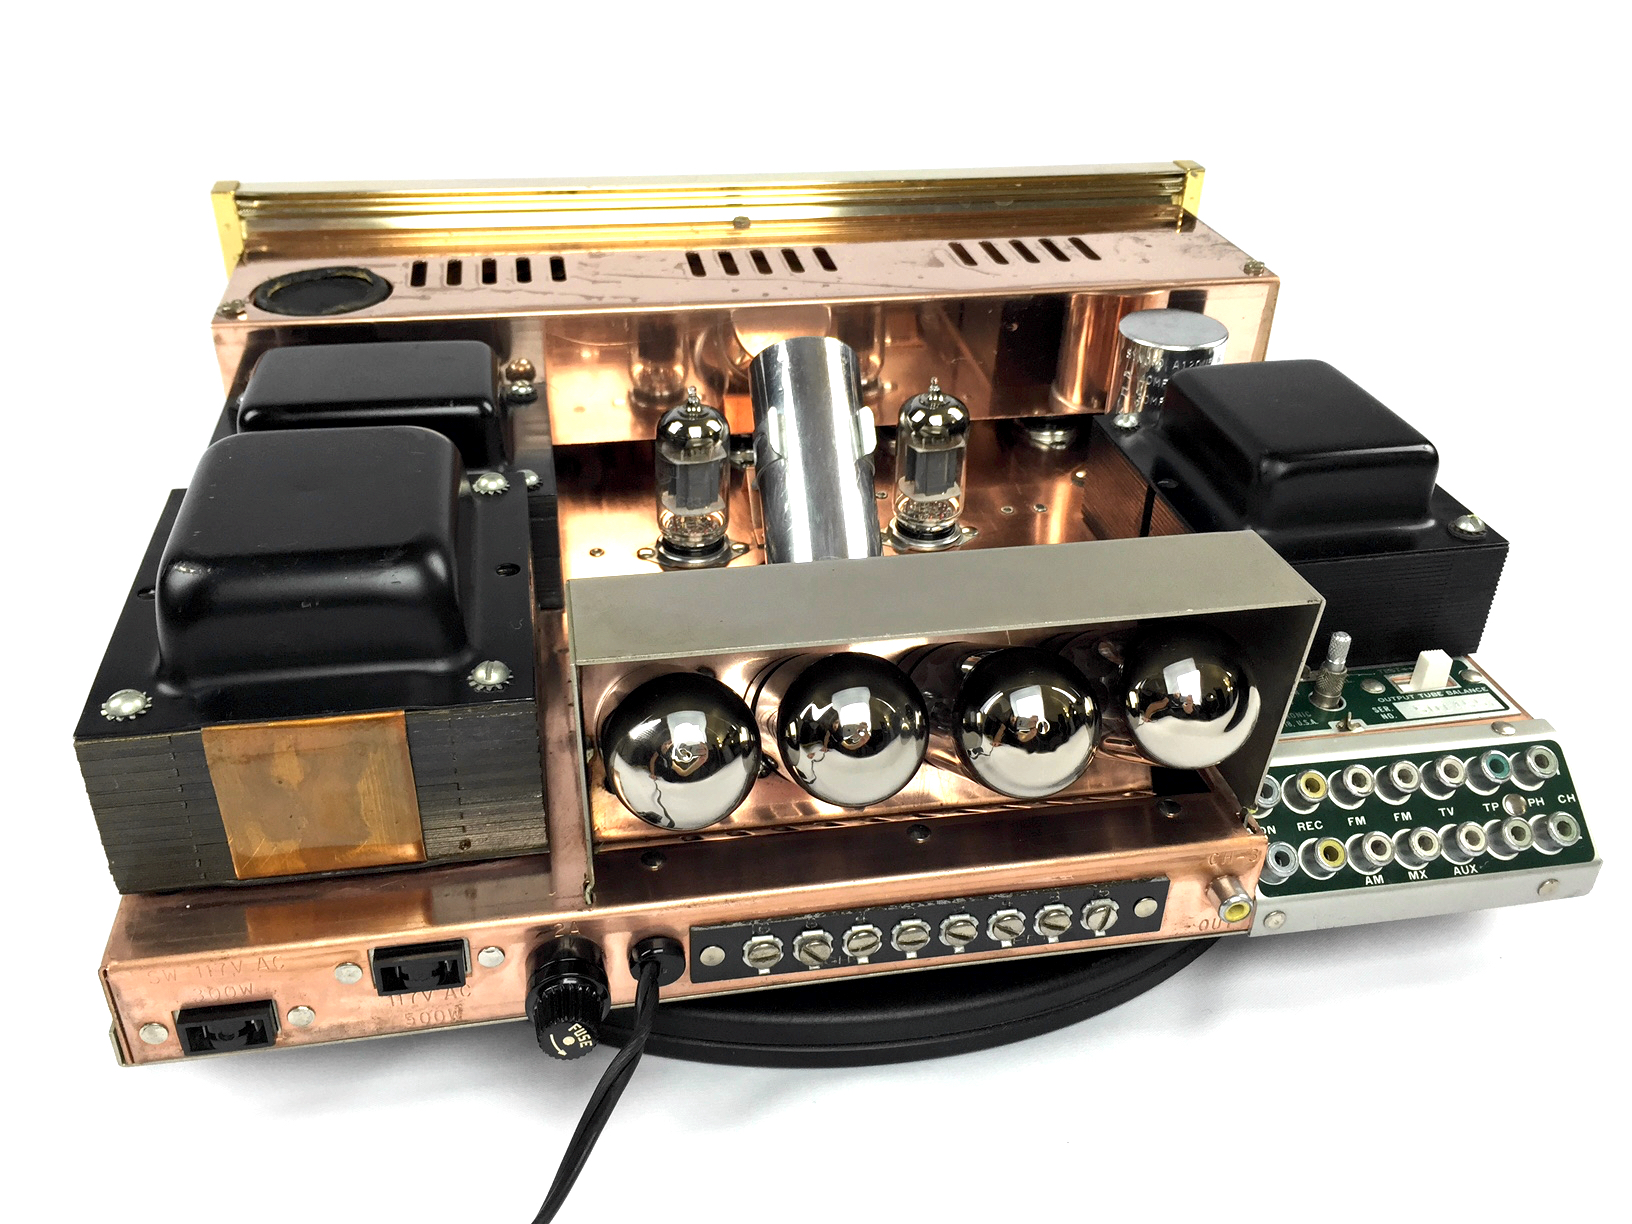 Sherwood S5000 II restored. Fully restored Sherwood 5000 tube amplifier